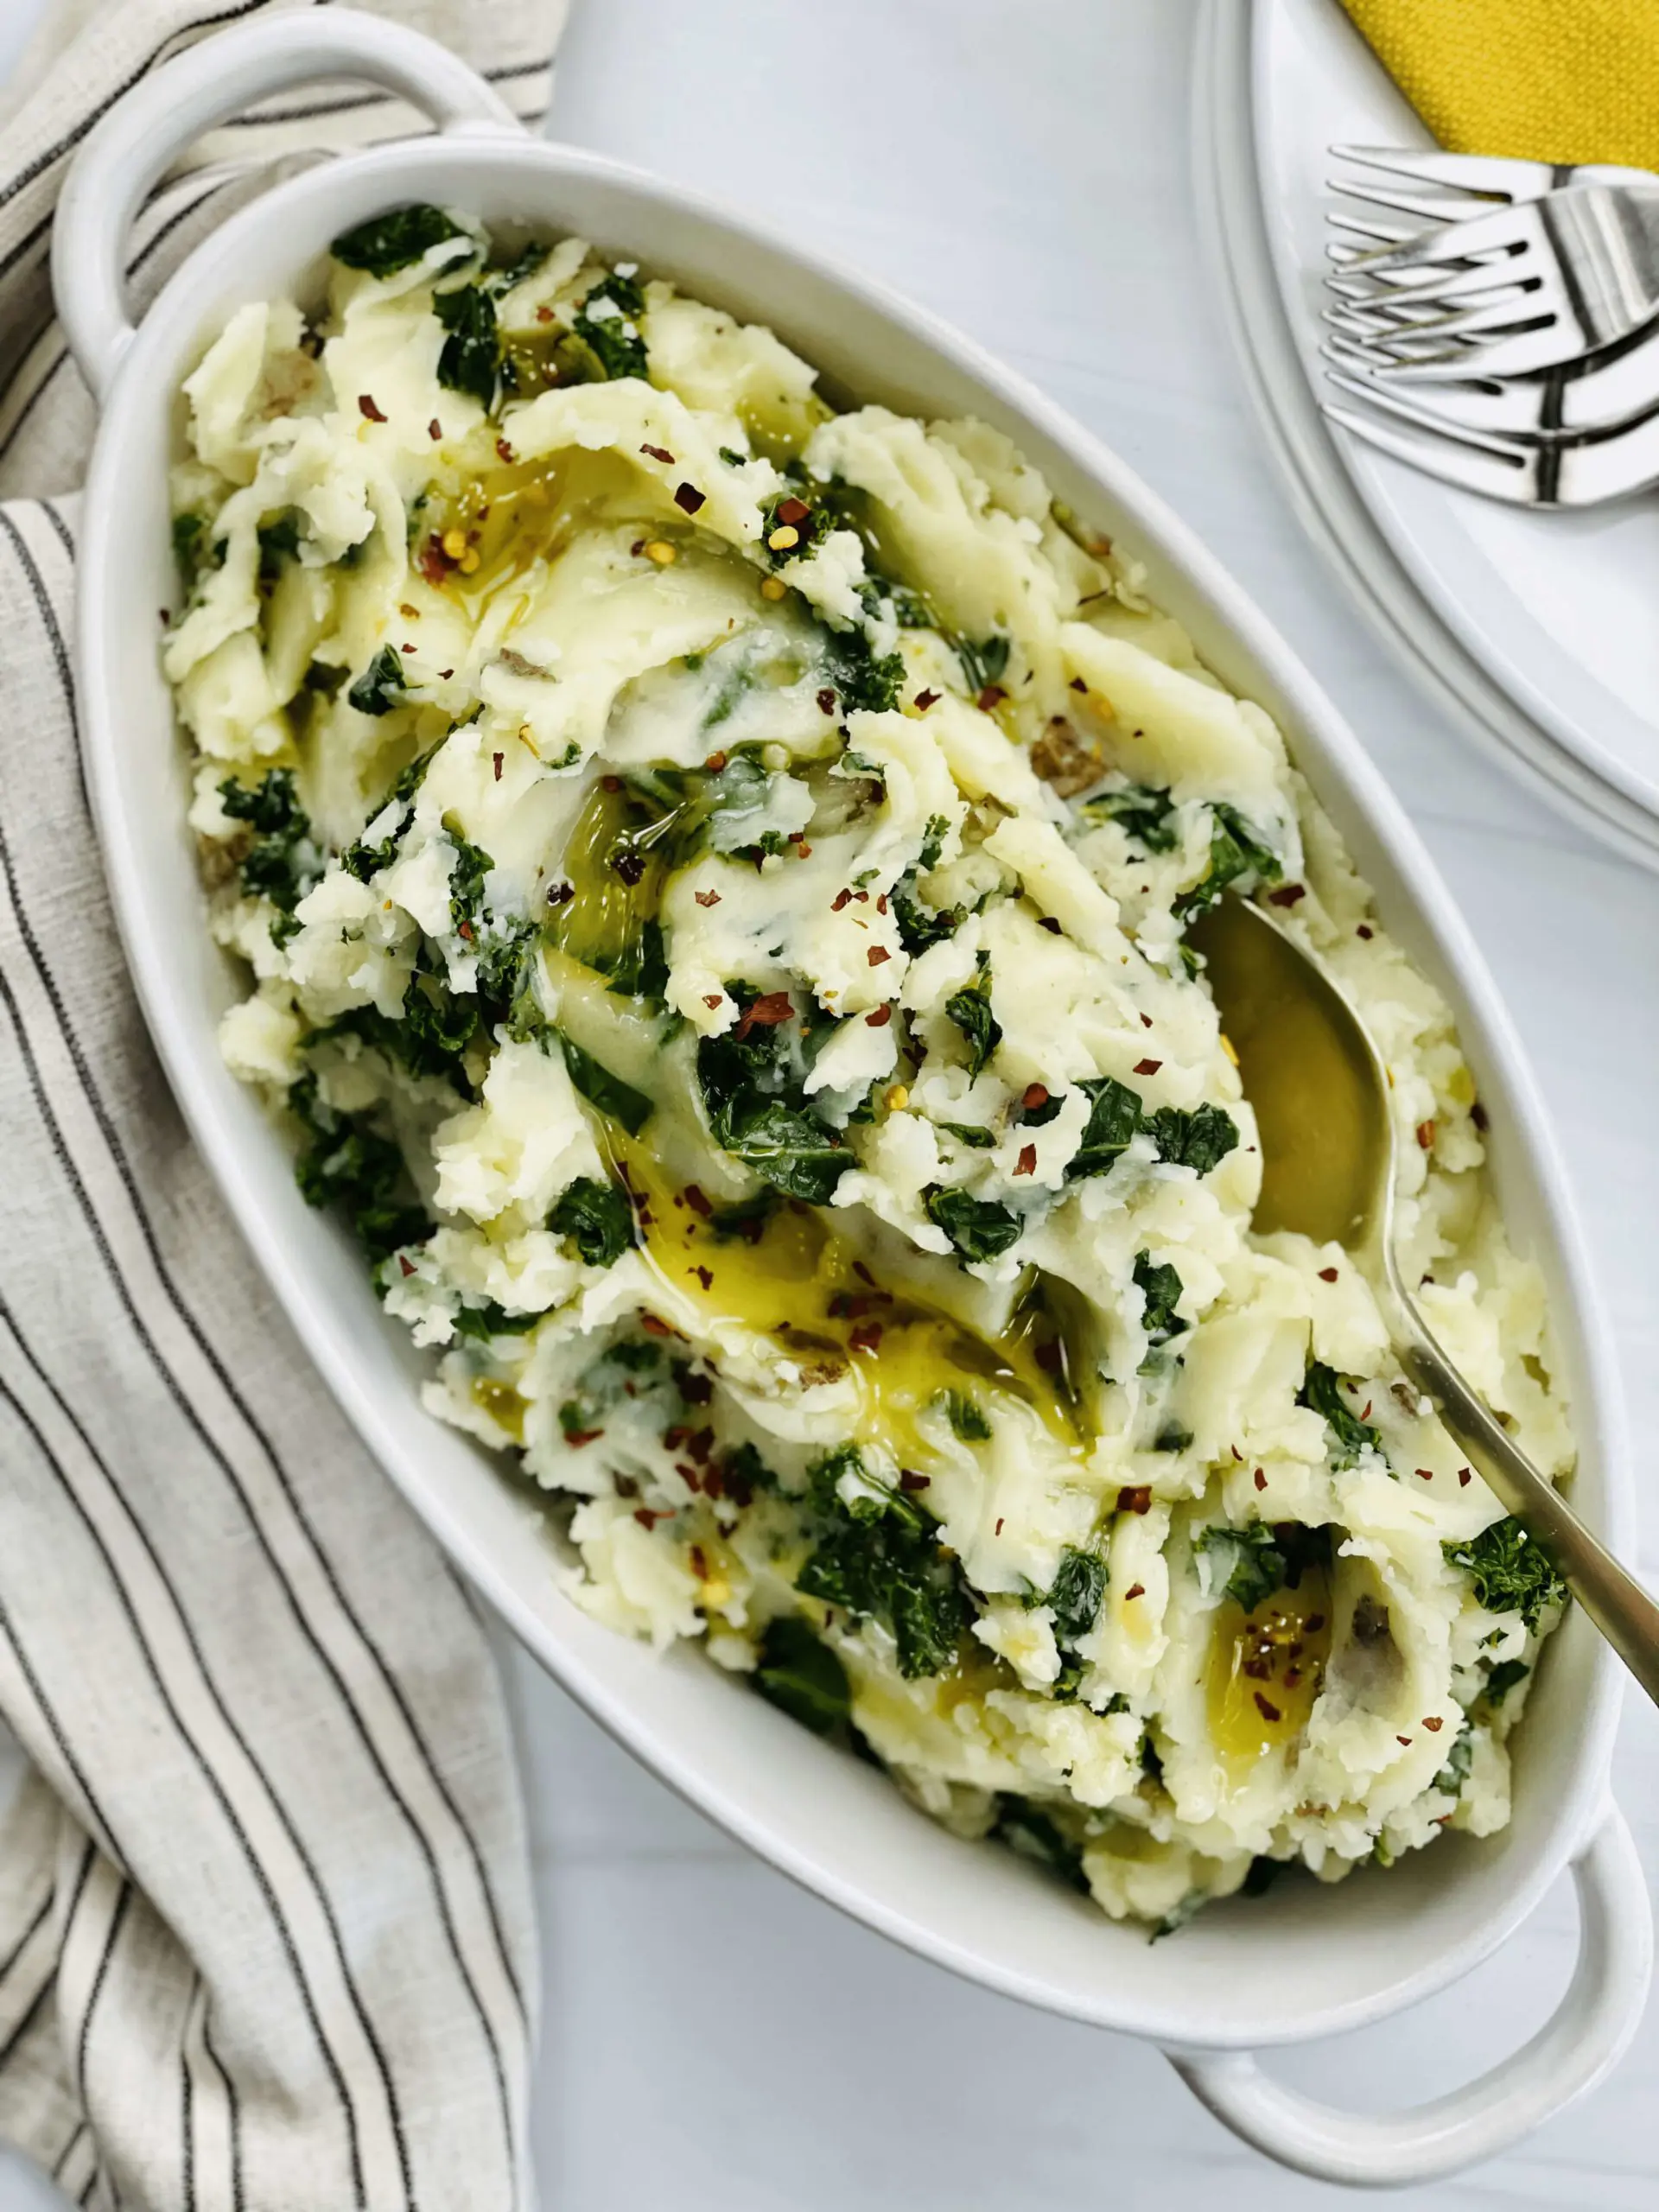 Vegan Mashed Potatoes with Kale